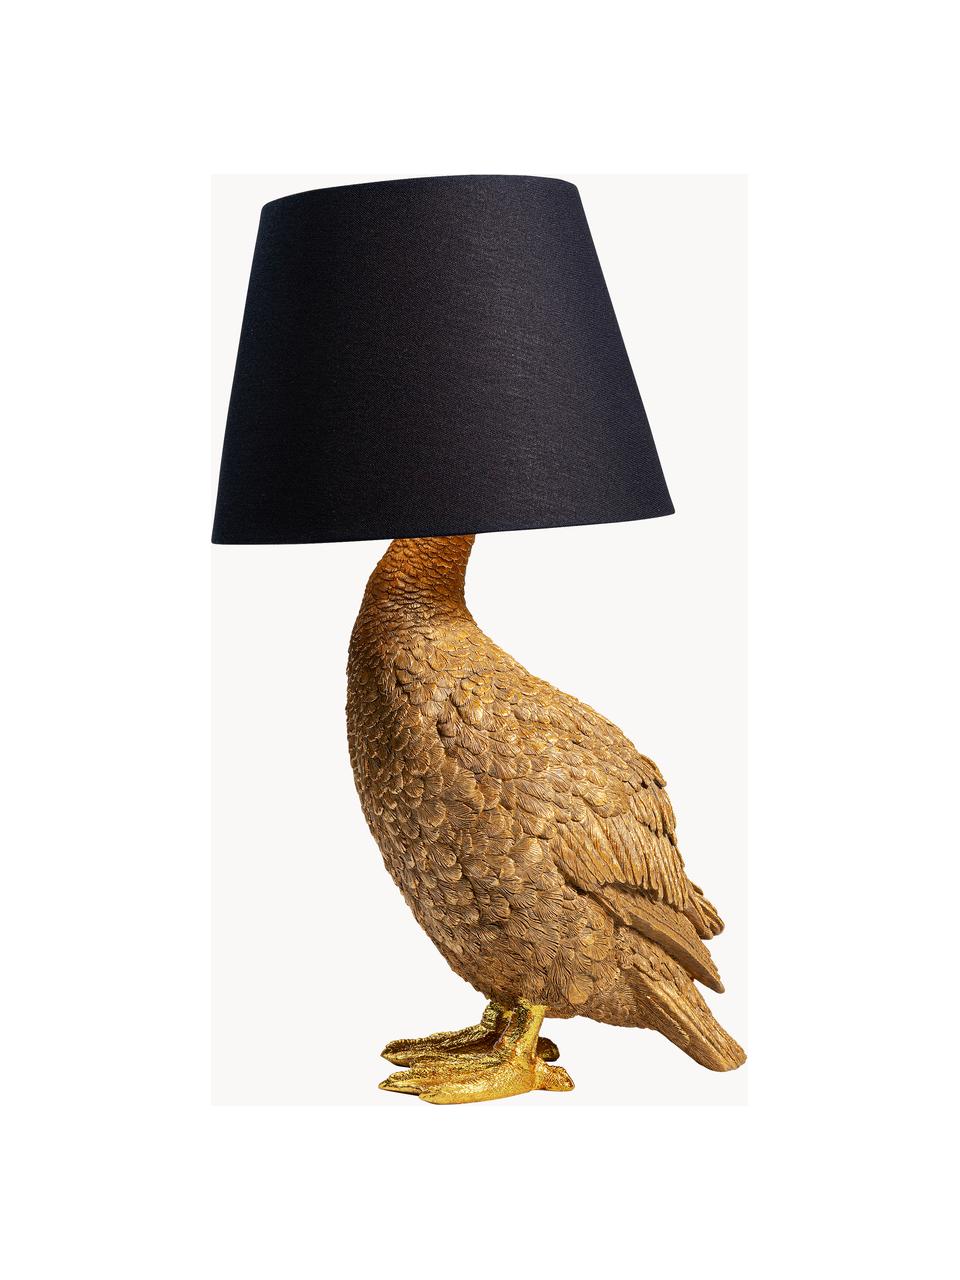 Grosse Design Tischlampe Duck, Lampenschirm: Baumwolle, Goldfarben, Schwarz, B 31 x H 58 cm